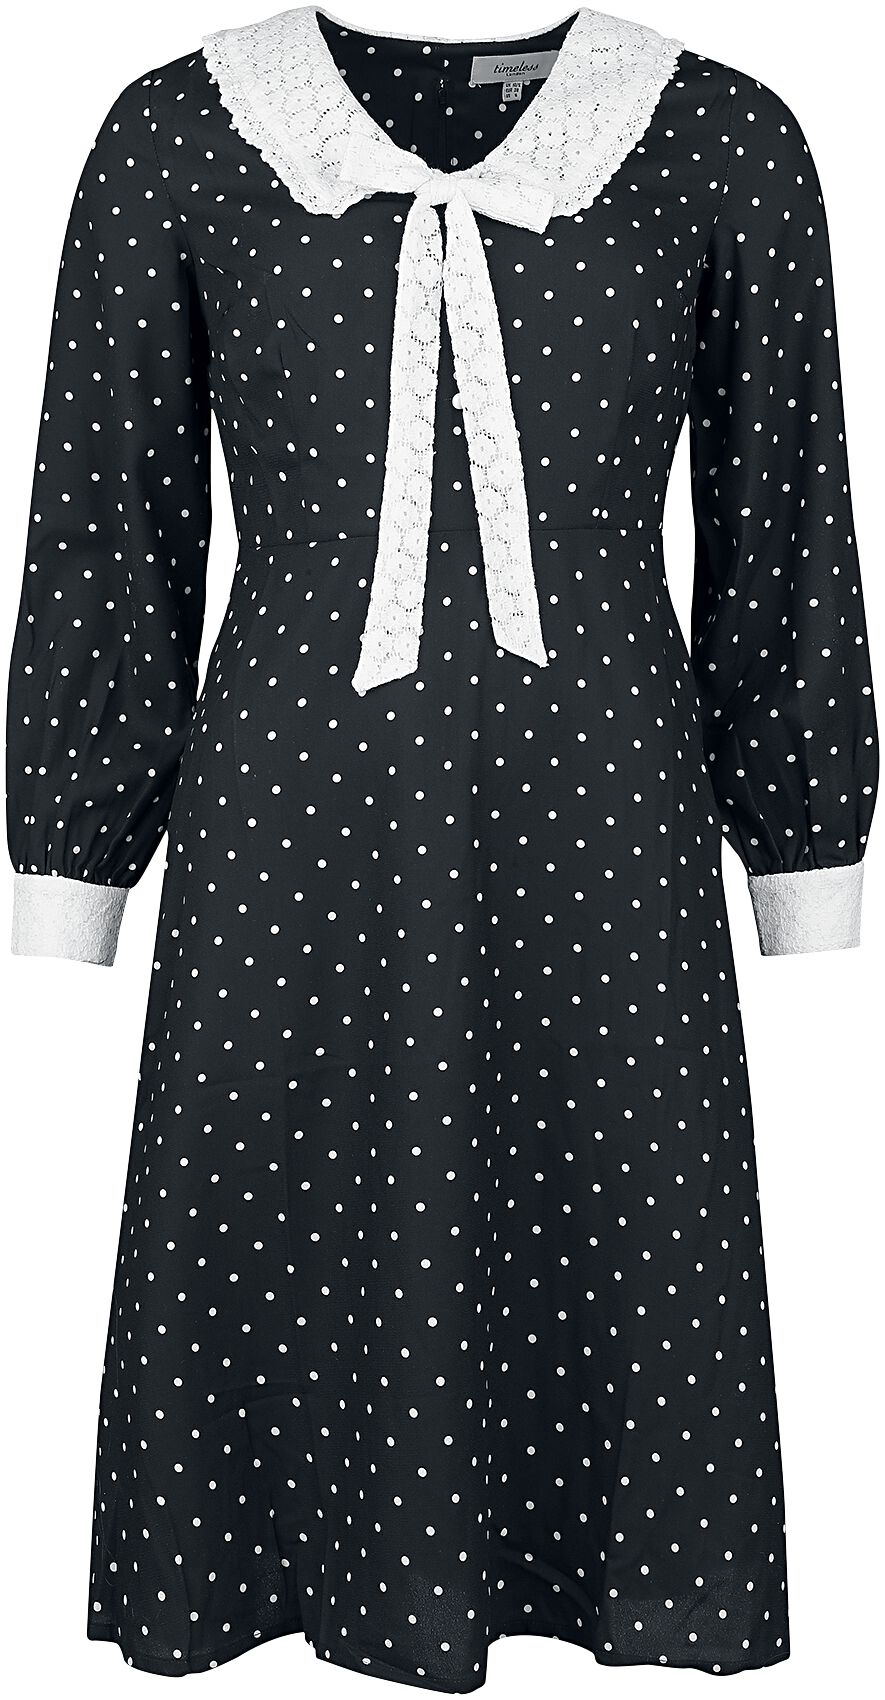 Timeless London Bow Front Dress Mittellanges Kleid schwarz weiß in XS